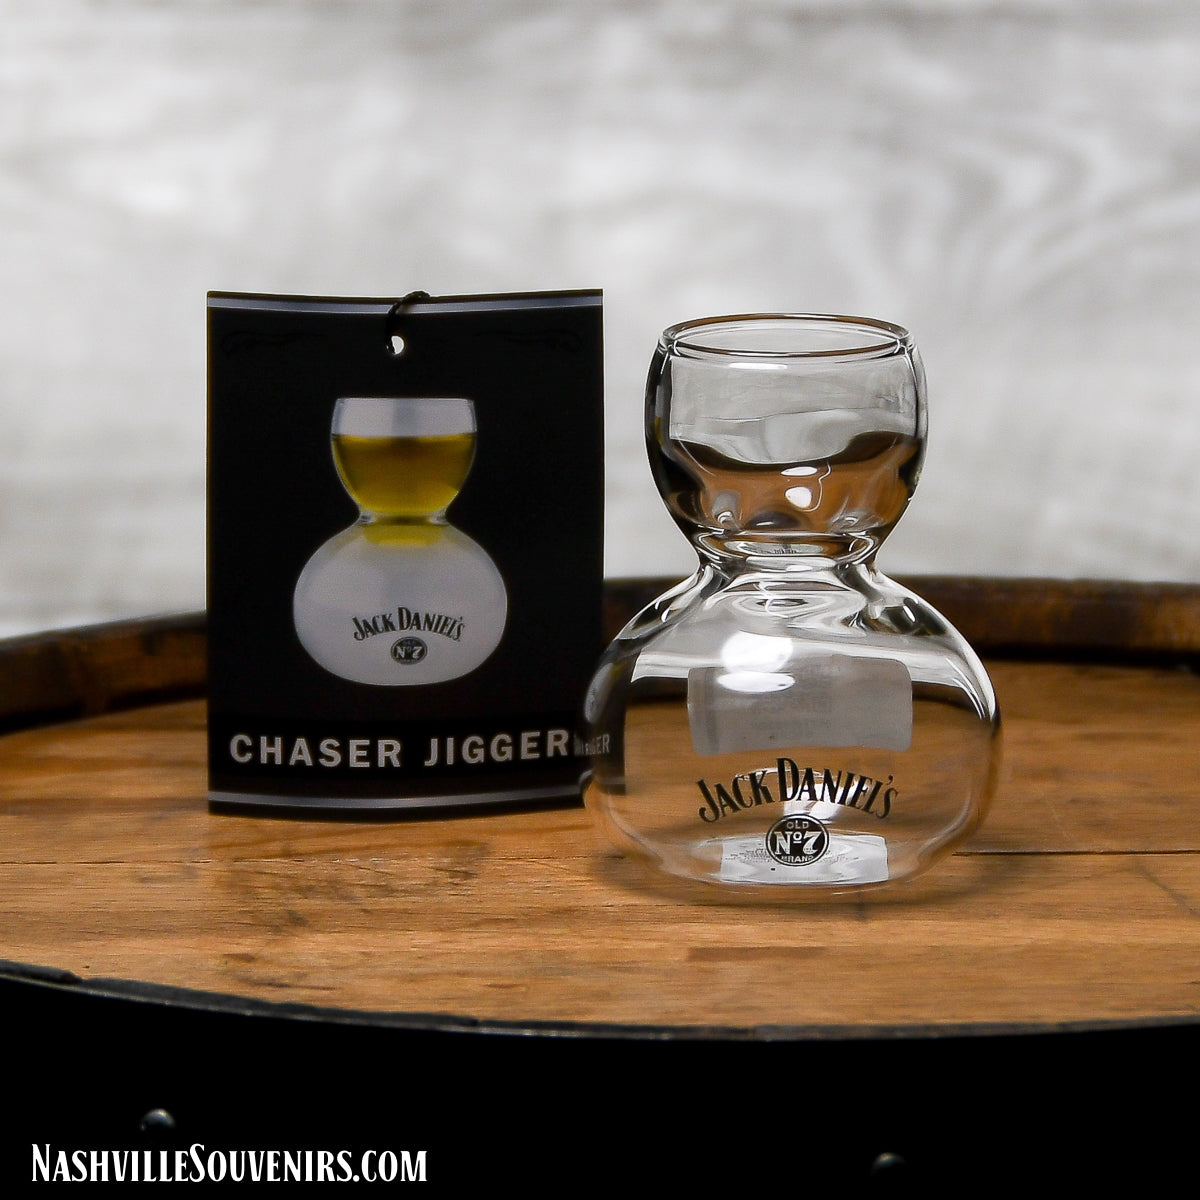 Jack Daniels Chaser Jigger Glass 